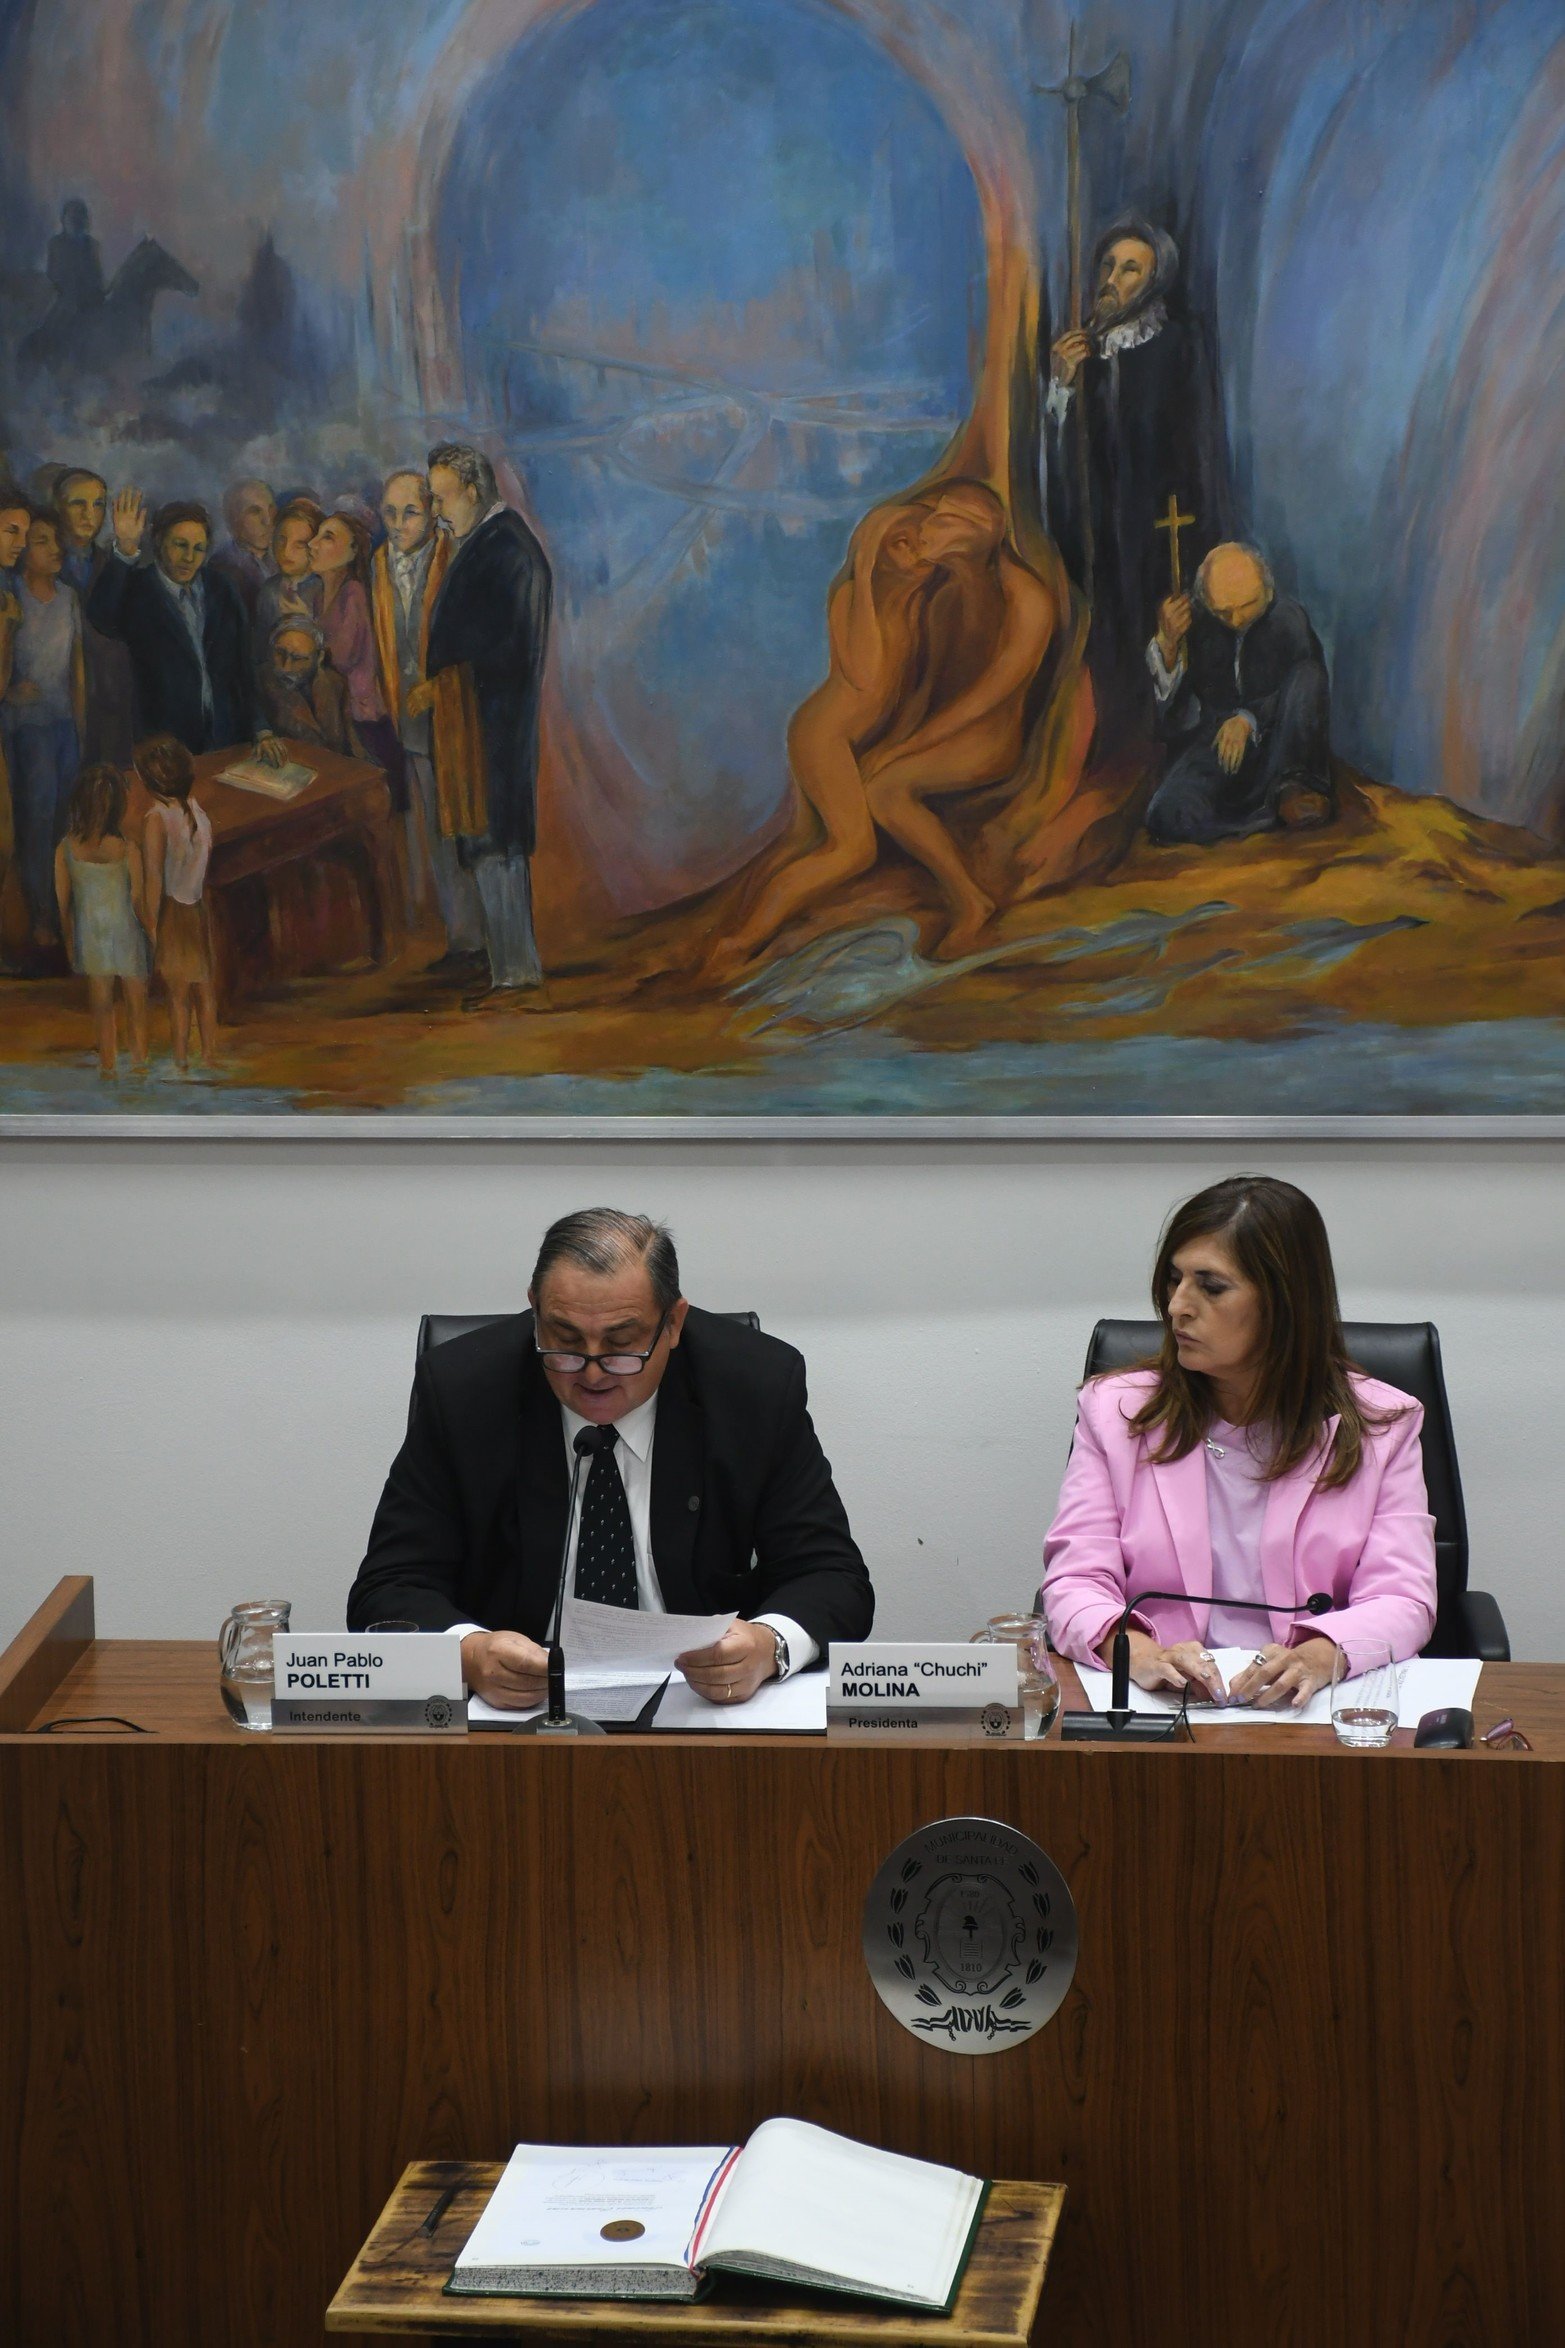 Apertura sesiones ordinarias concejo  municipal el discurso del intendente Juan Pablo Poletti acompañado por la presidente del concejo Adriana "Chuchi" Molina